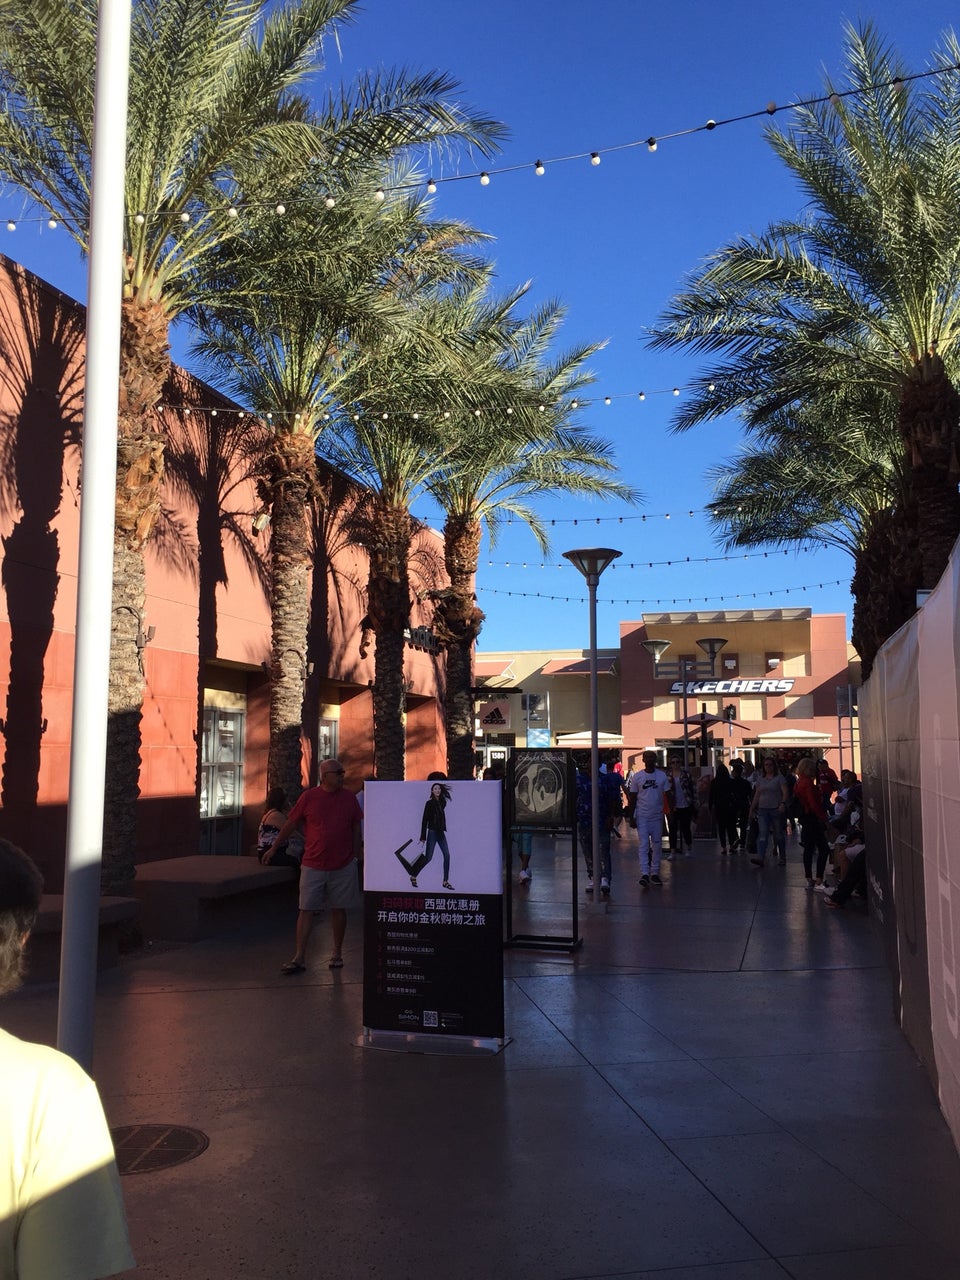 Photos at Las Vegas North Premium Outlets - Las Vegas, NV